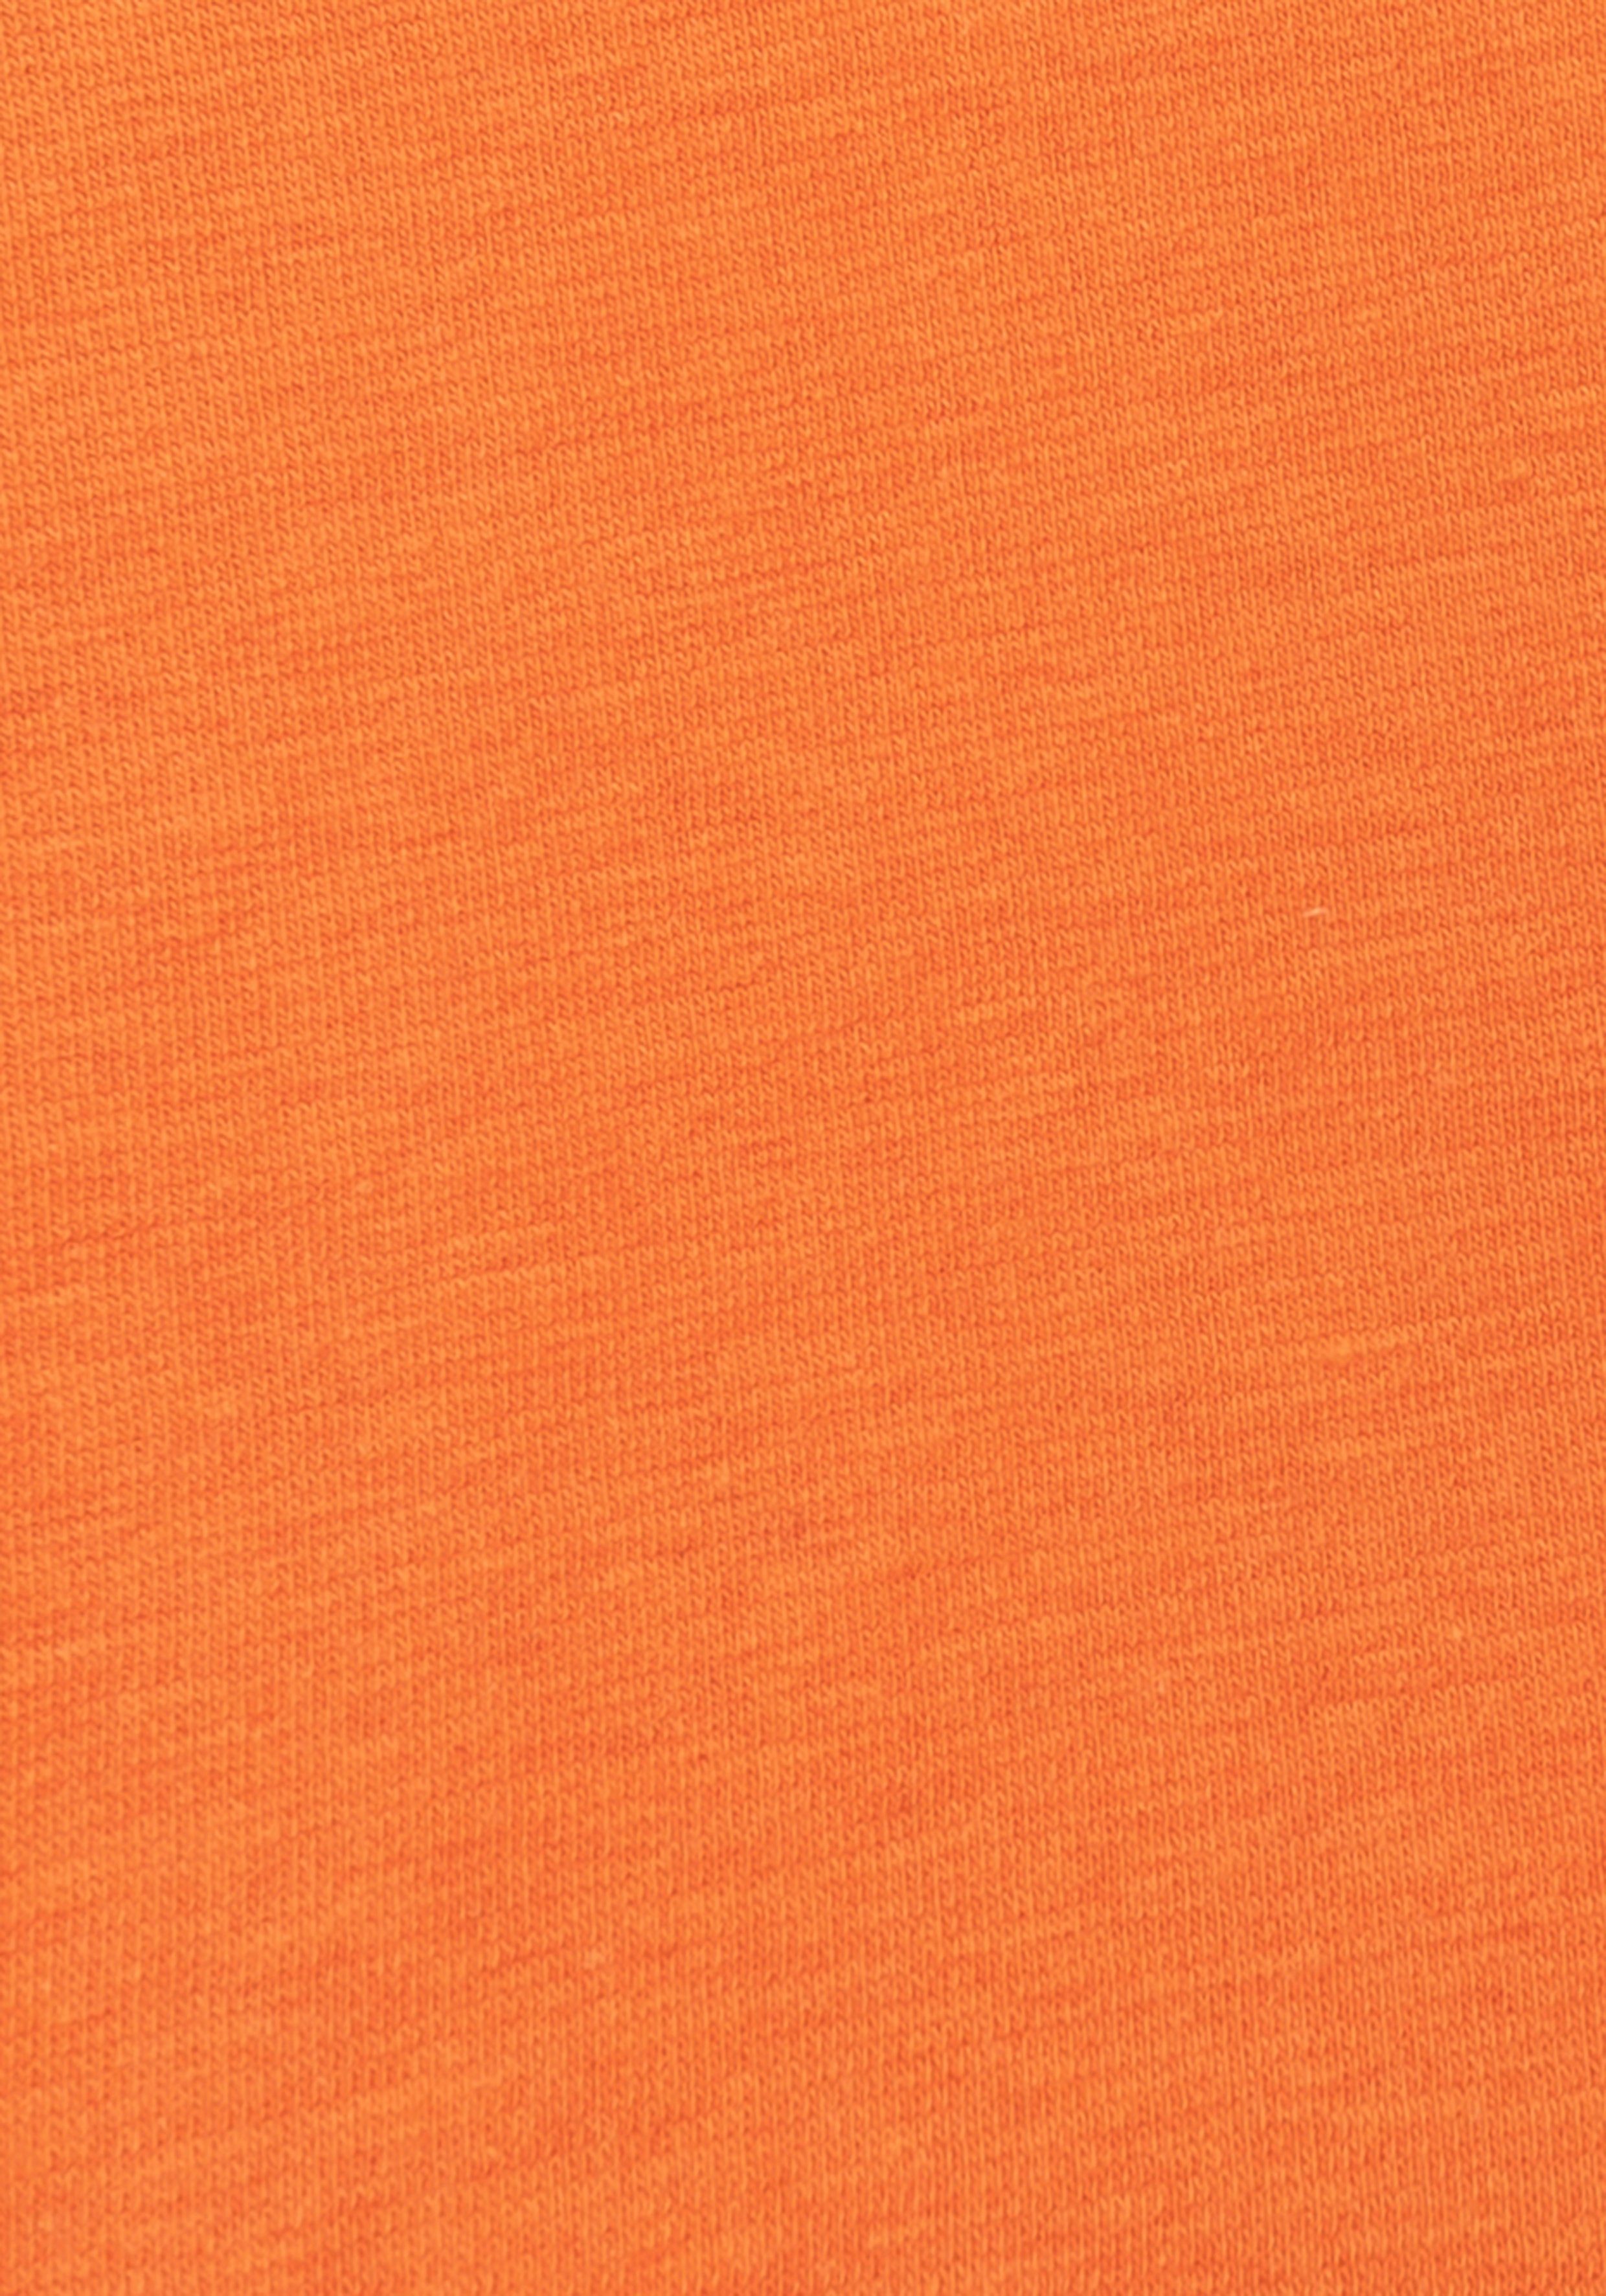 H.I.S Boxer (Packung, 4-St) einen marine-orange für marine-blau, blau-marine, sportlichen orange-marine, mit coolem Colorblocking Auftritt